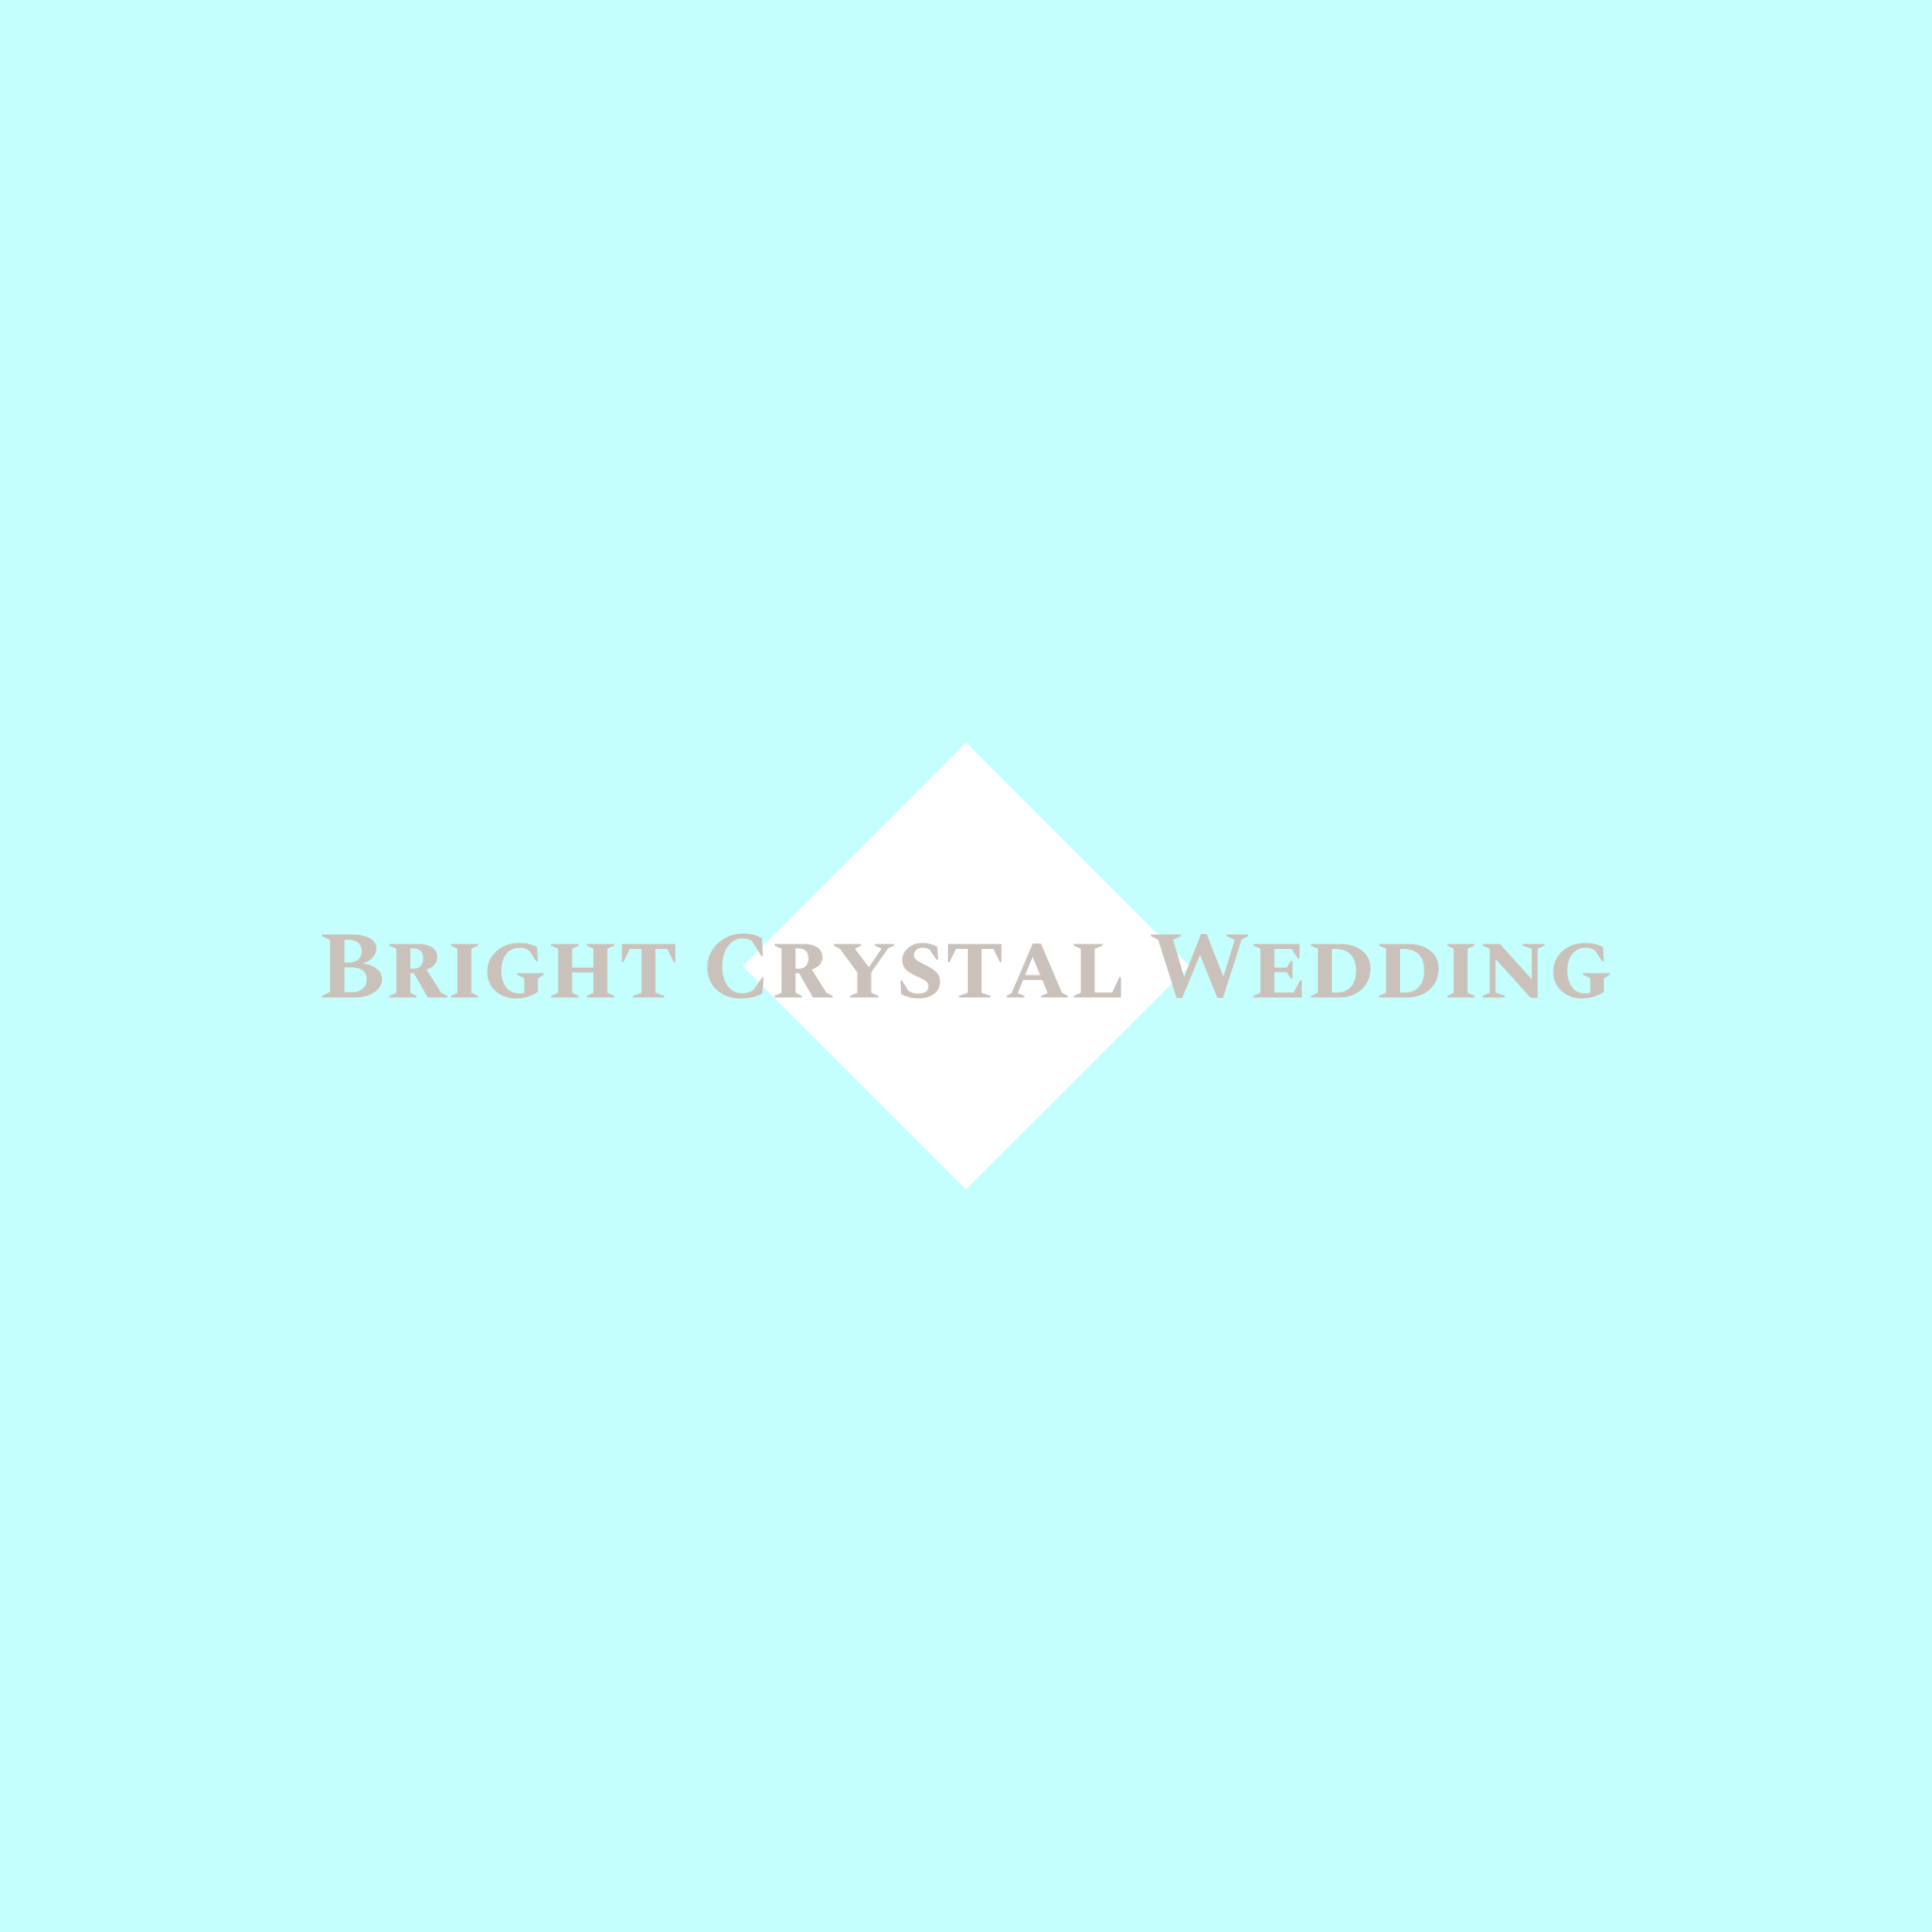 Bright Crystal Wedding 